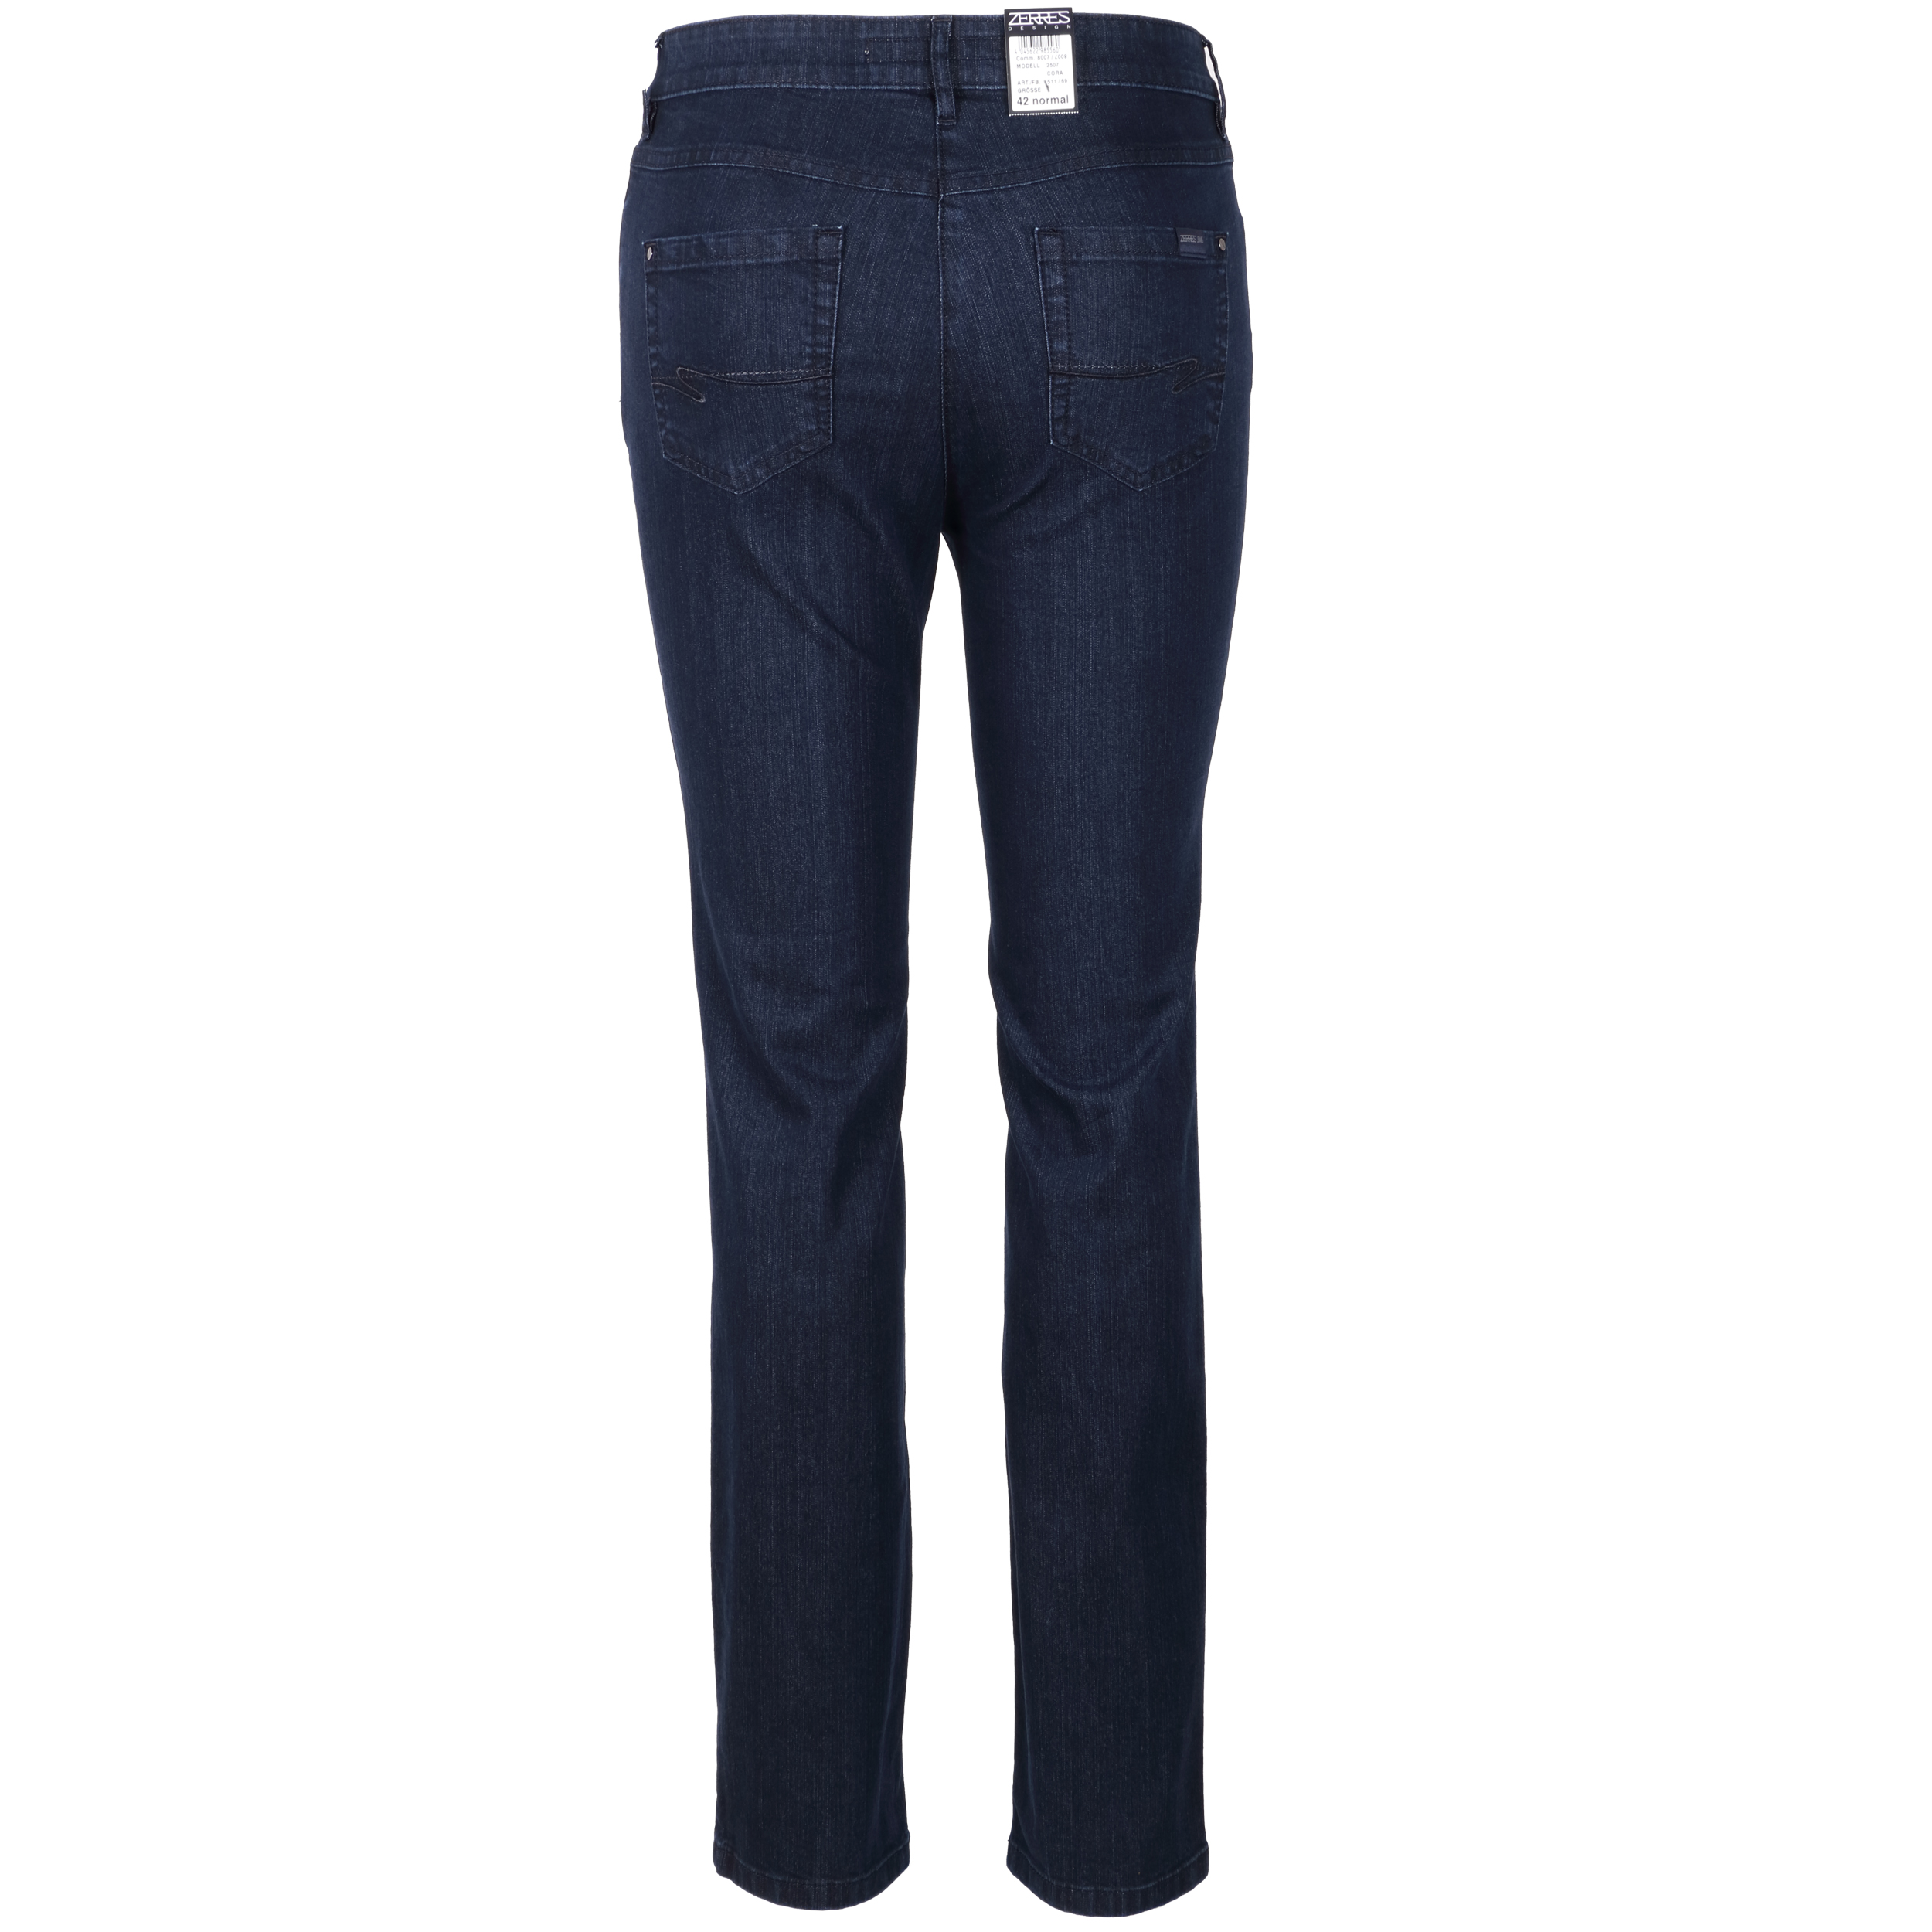 Zerres Damen Jeans Cora comfort S 19 dunkelblau